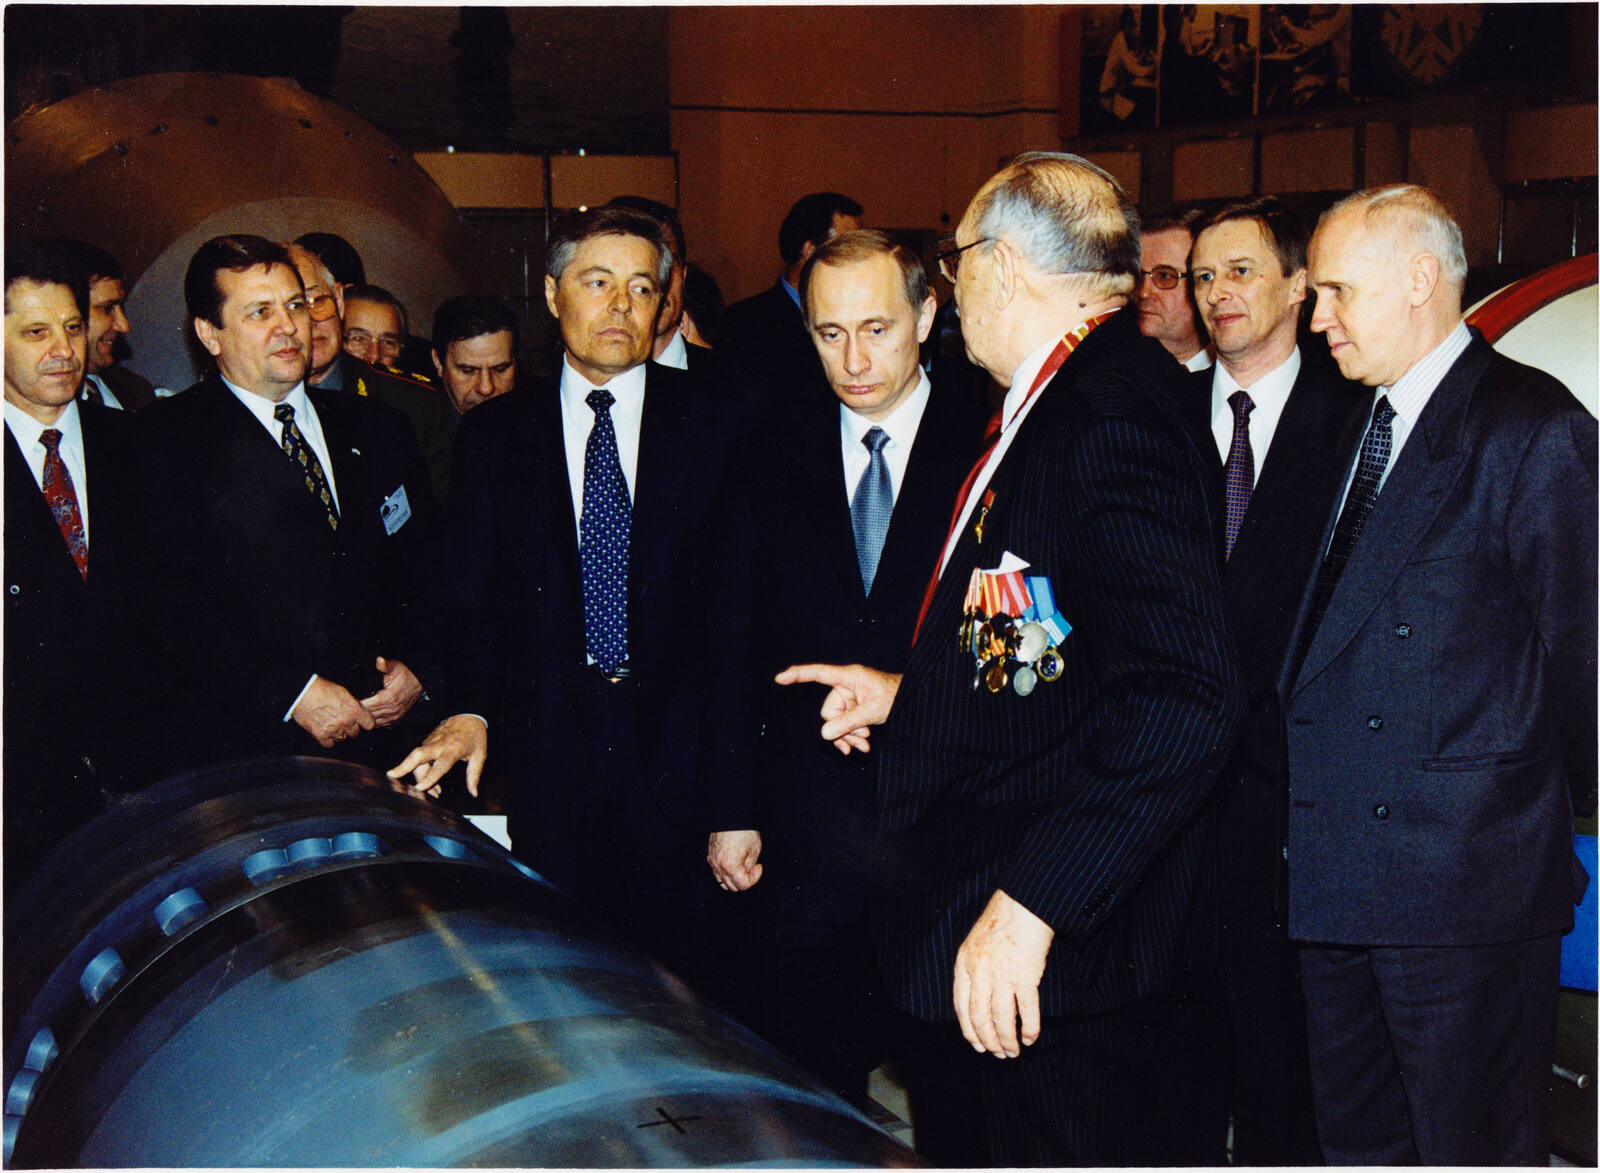 Б.В. Литвинов, В.В. Путин и Е.О. Адамов возле ядерного взрывного устройства для мирных применений. 30 марта 2000 г.